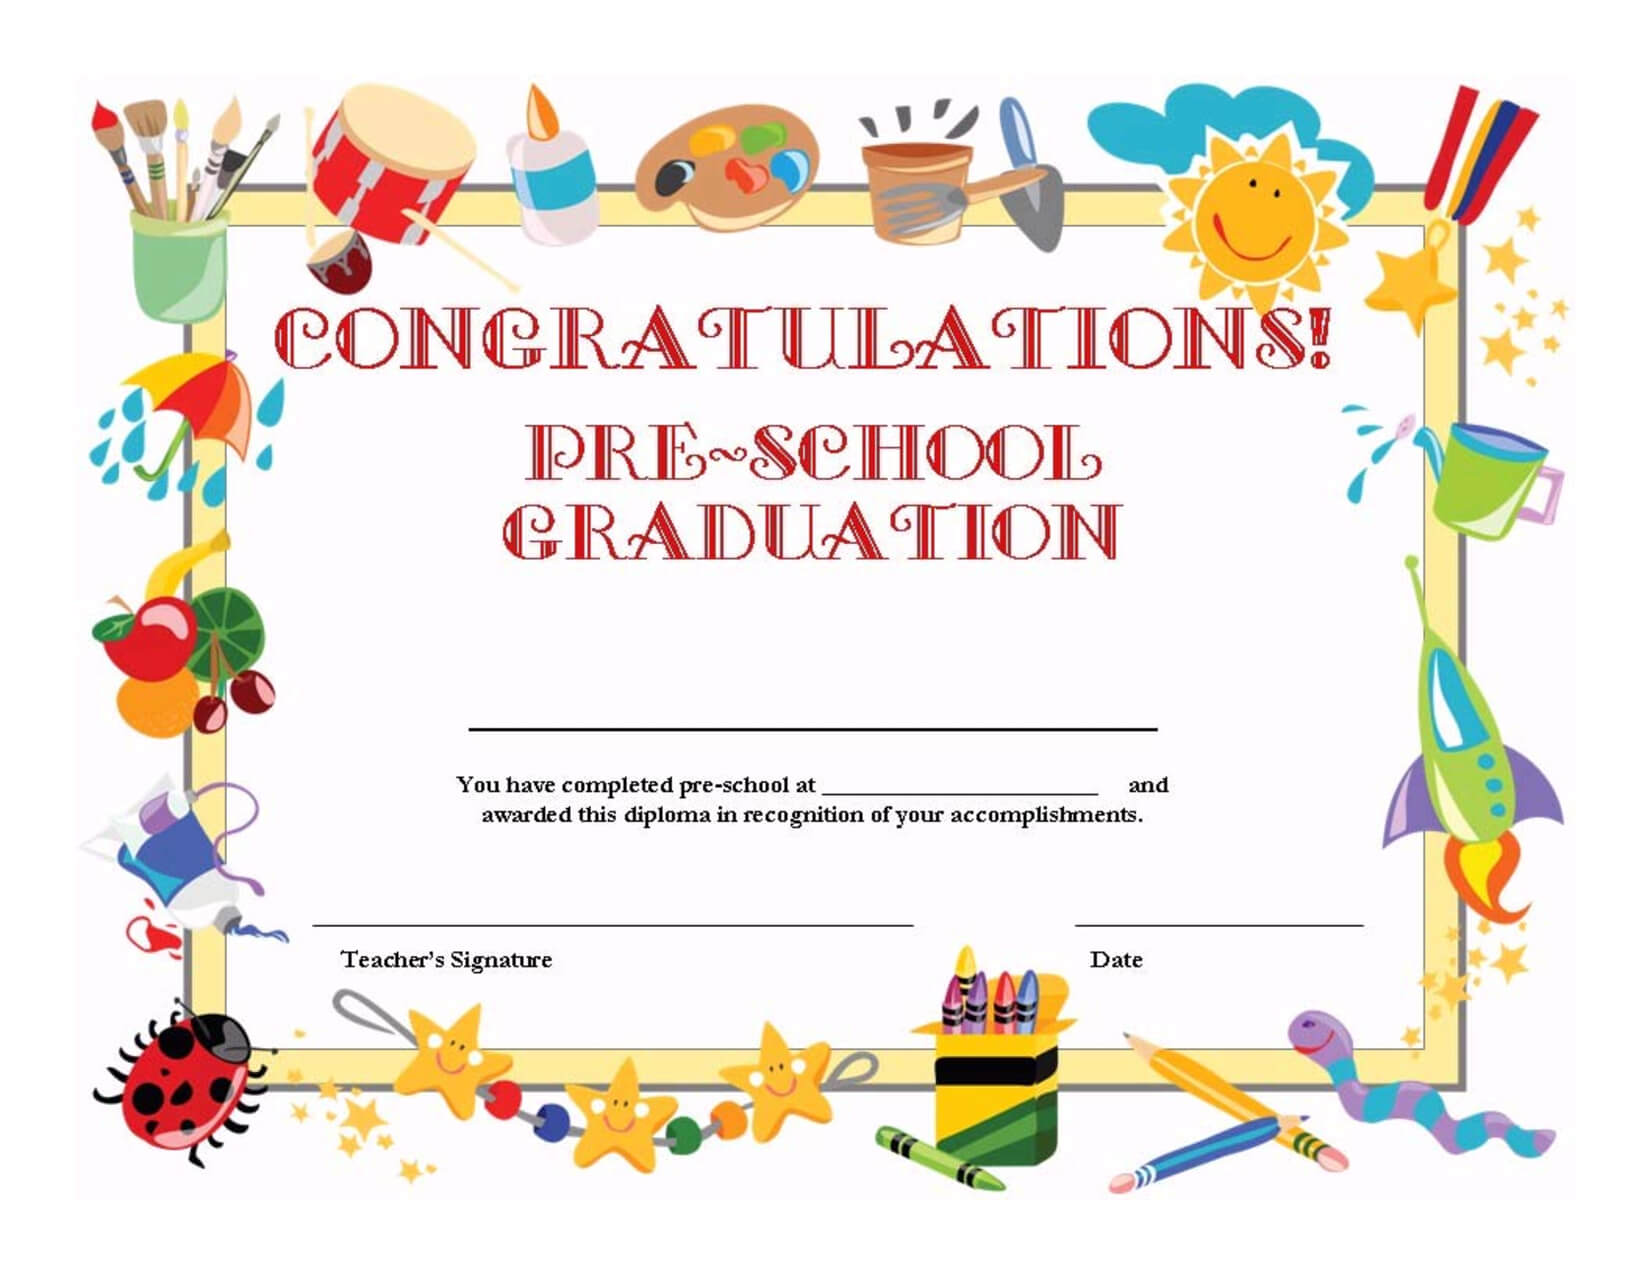 Preschool Graduation Certificate Template Free | Graduation Within Free Printable Graduation Certificate Templates